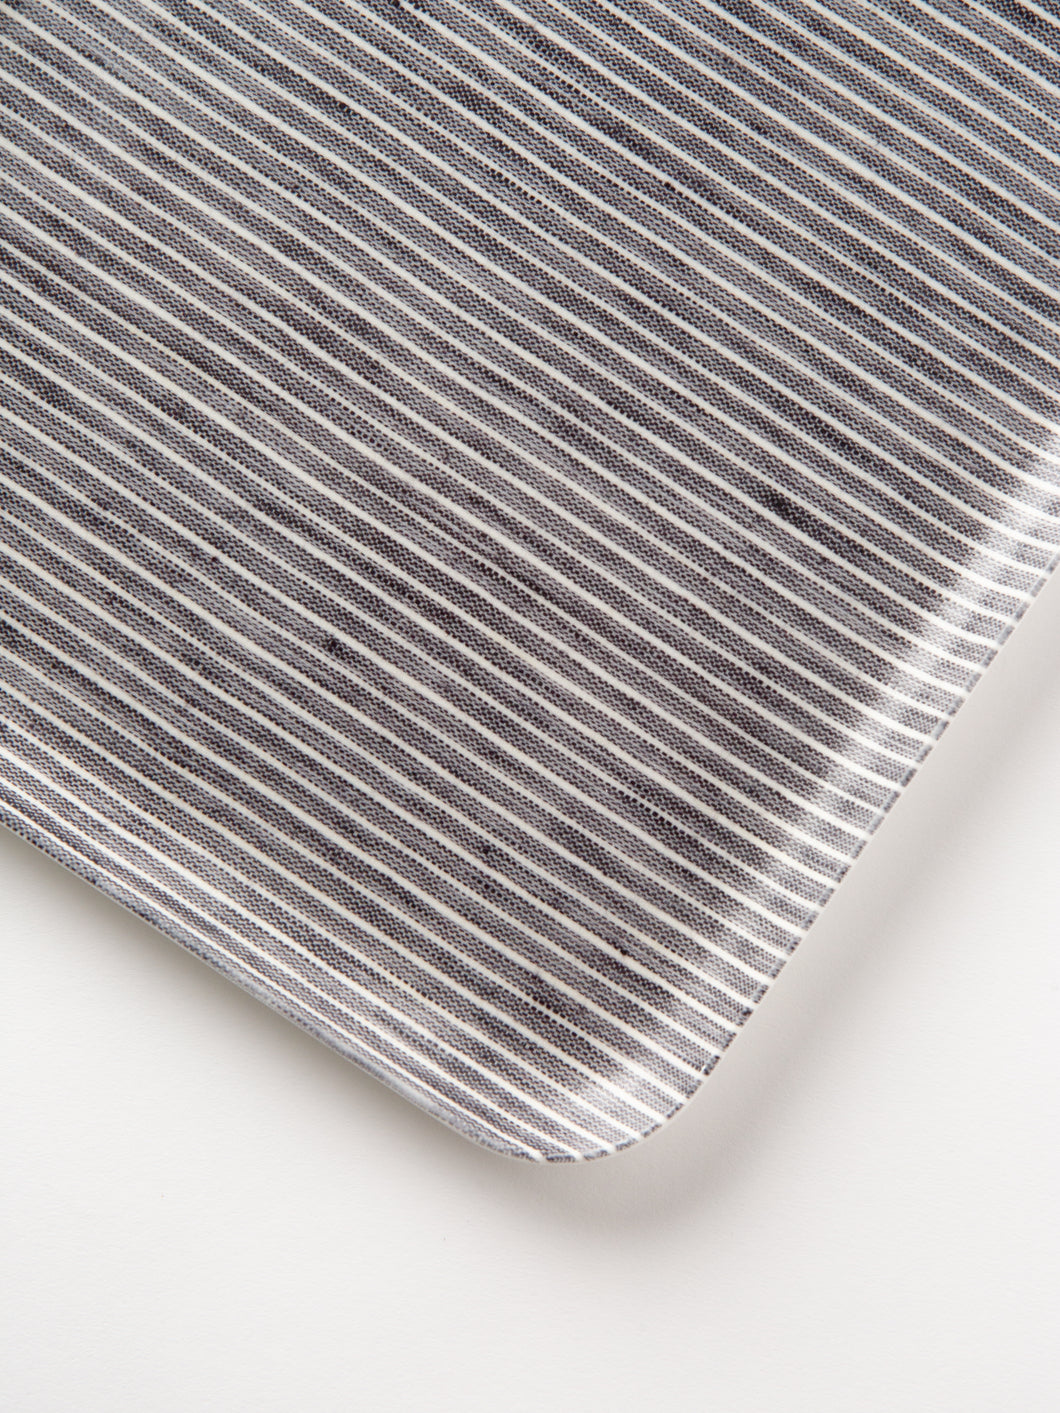 Linen Coated Tray Medium